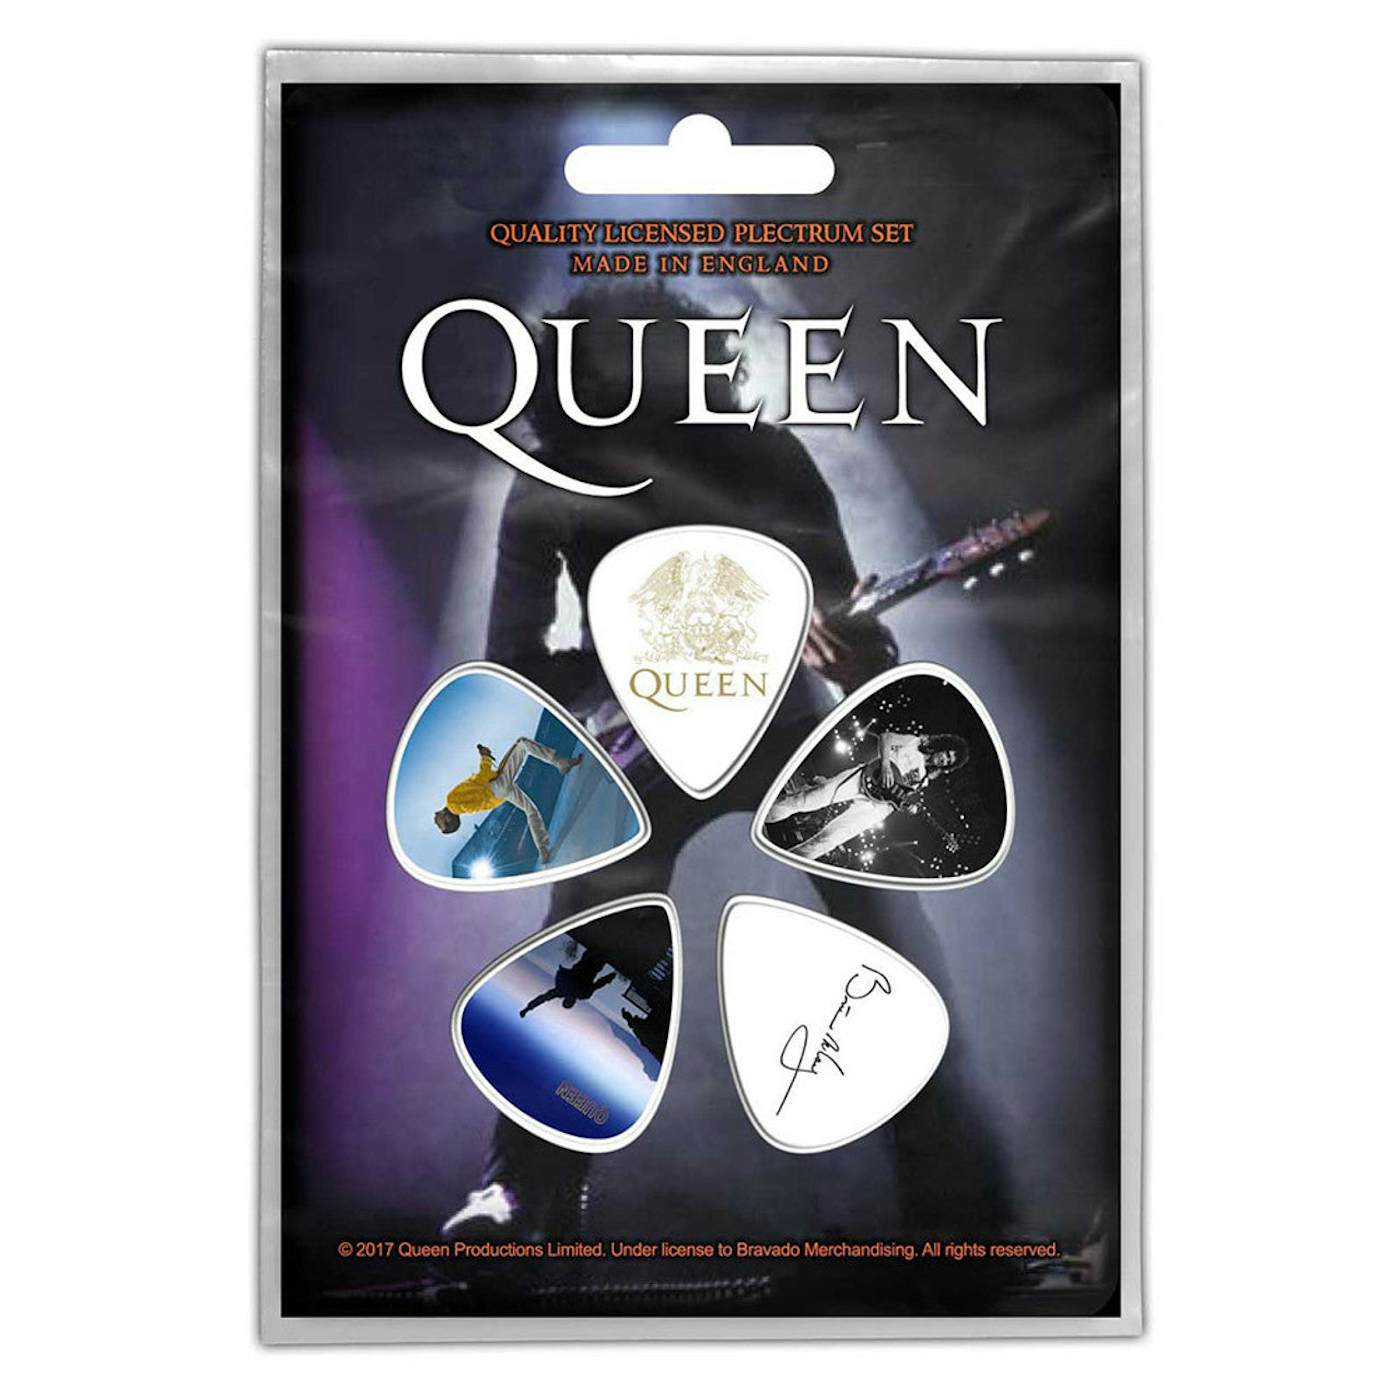 Queen – Bohemian Rhapsody (The Original Soundtrack) Vinilo – The Viniloscl  SPA